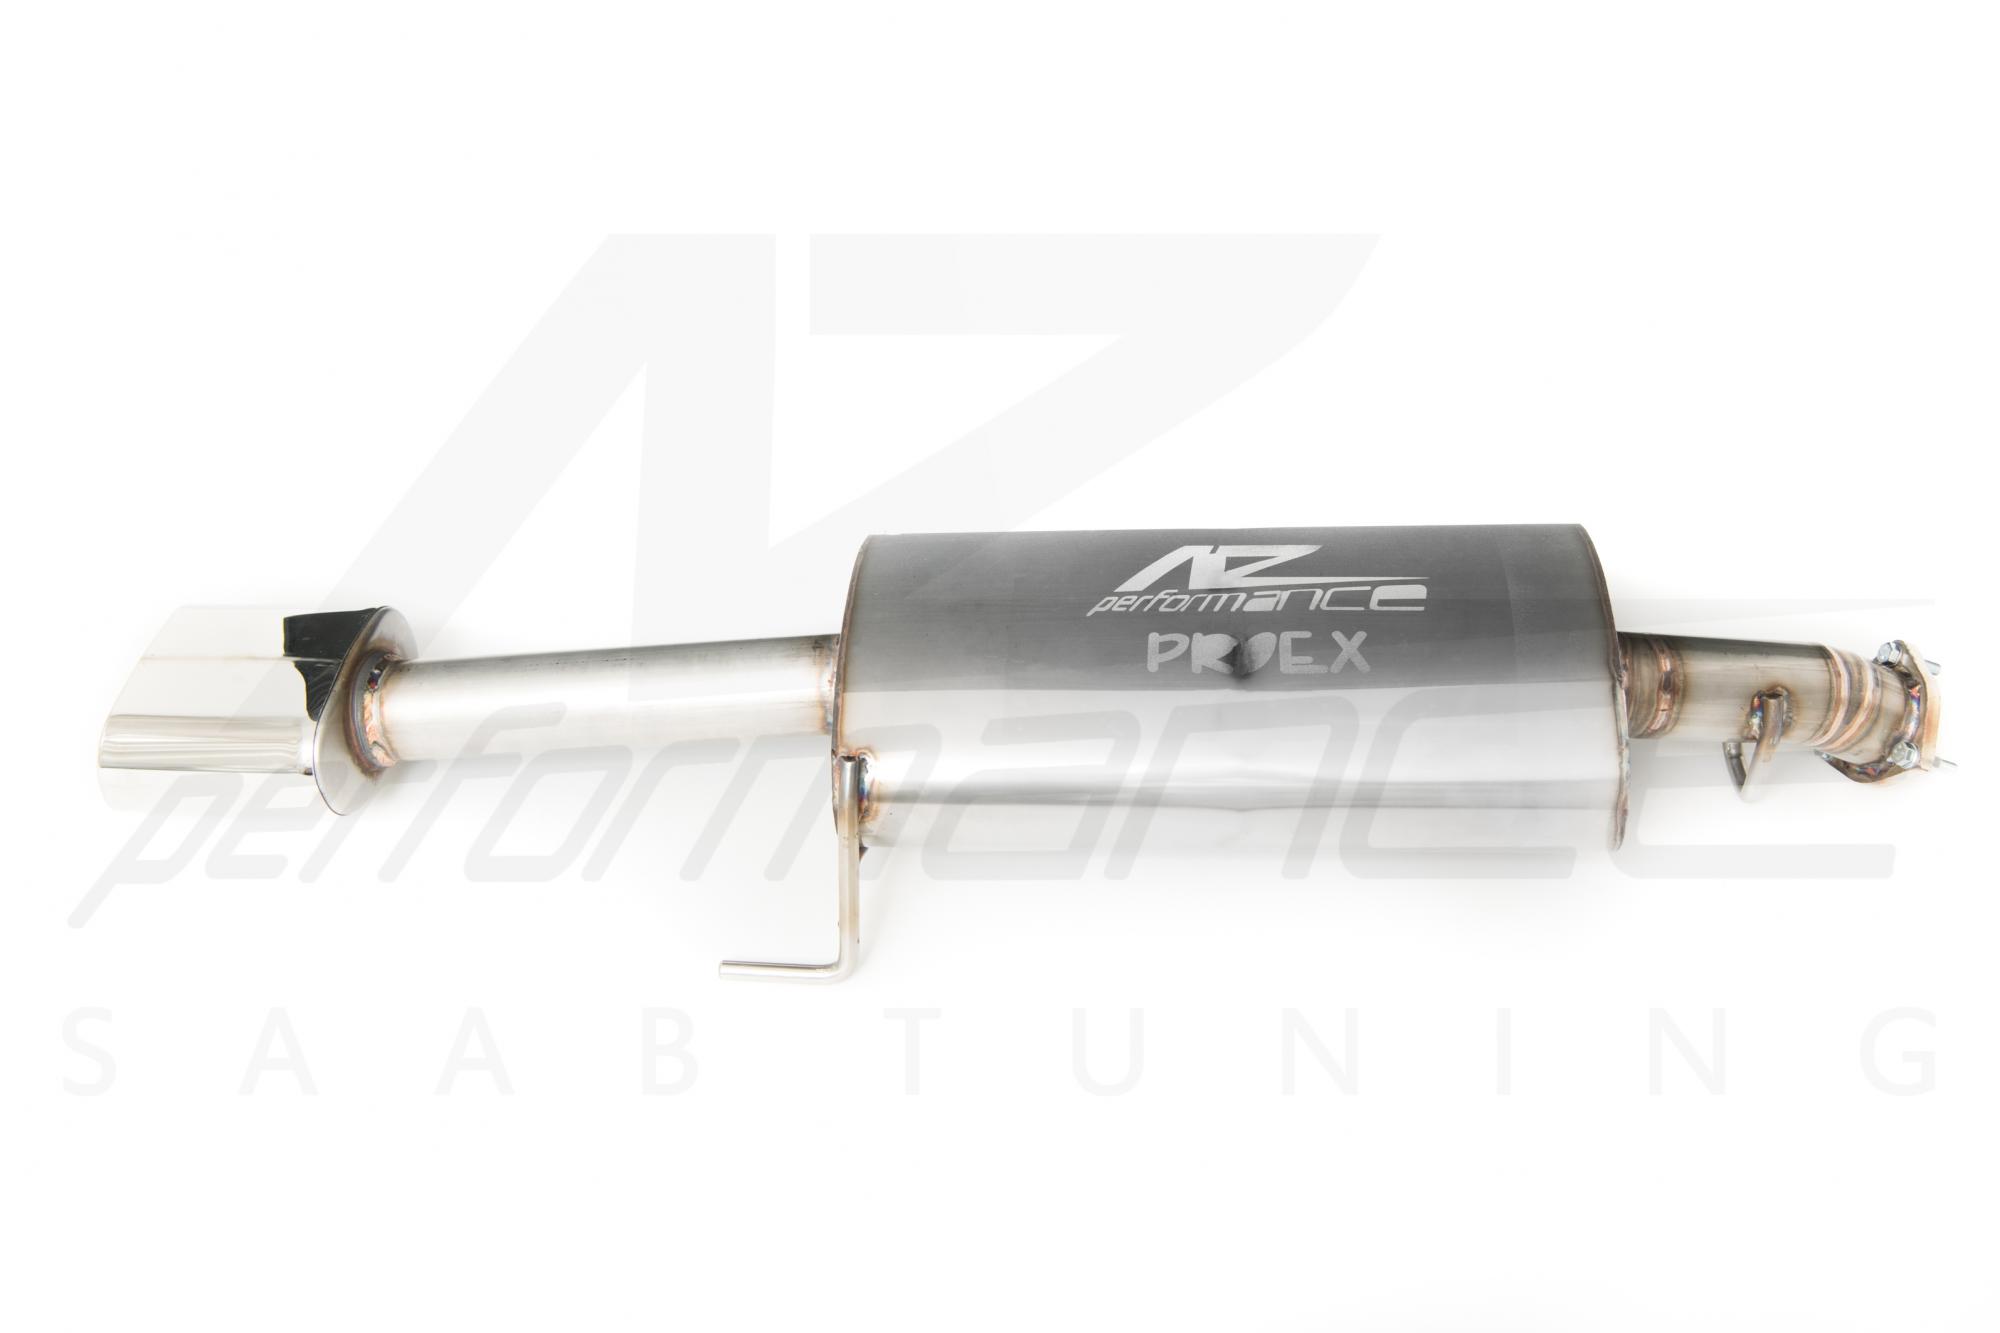 A-Zperformance-Proex 63mm/2.5" Sport Exhaust SAAB 900 9-3